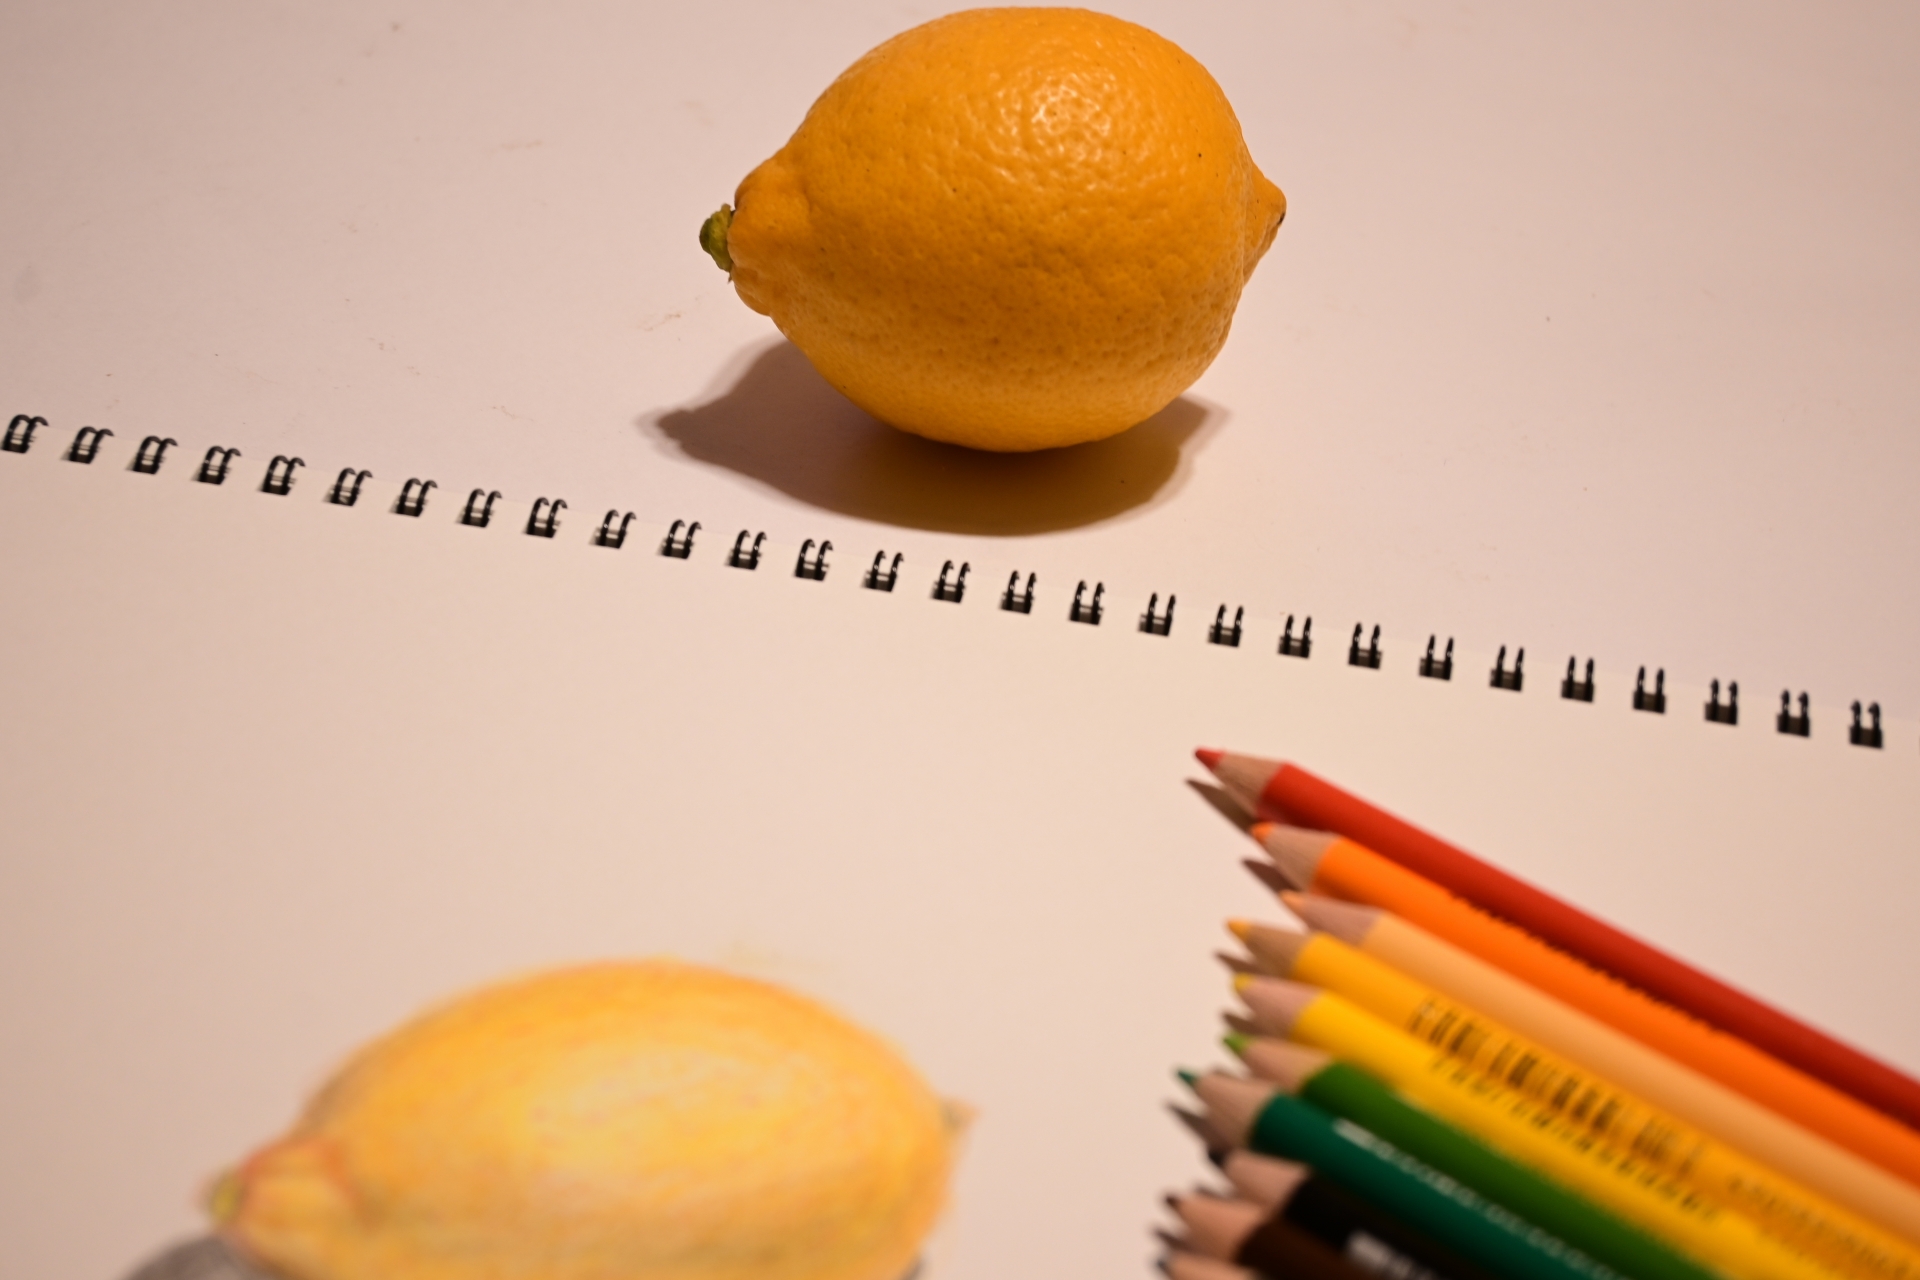 レモンのサンプルをデザインした写真